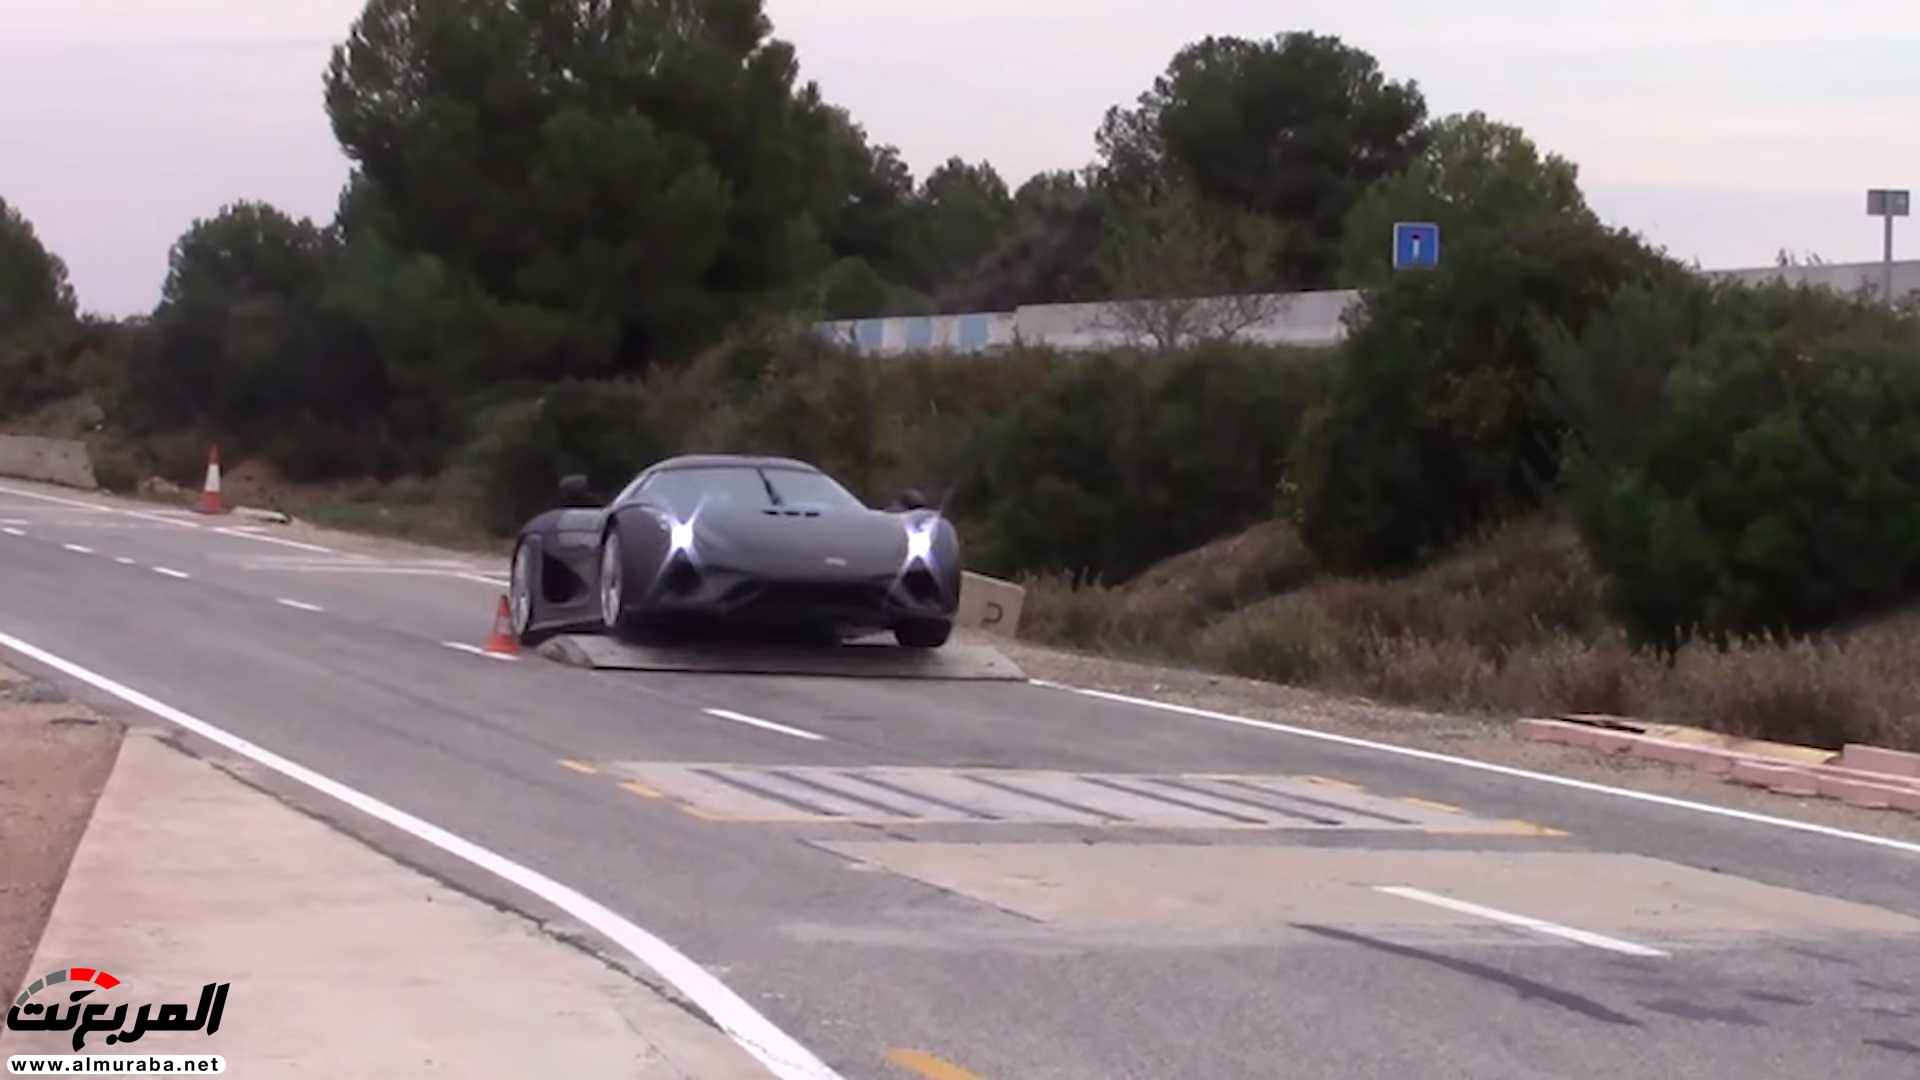 "بالفيديو" اختبار تصادم سيارة كوينيجسيج بقيمة 7.5 مليون ريال! 2